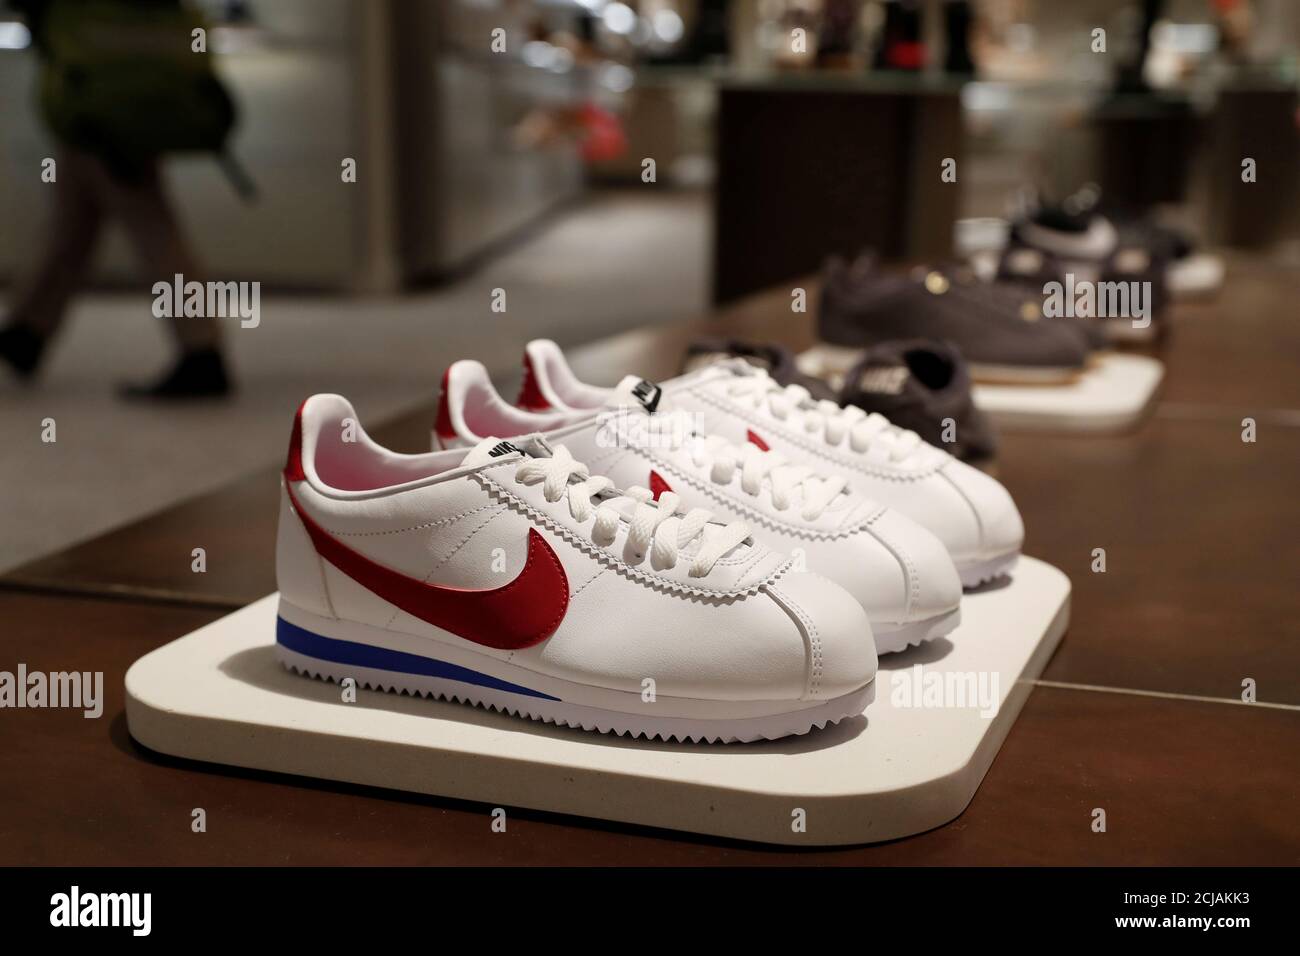 Los zapatos Nike se ven en exhibición en tienda insignia Nordstrom durante un avance en los medios de comunicación en Nueva York, de octubre de 2019. REUTERS/Shannon Stapleton Fotografía